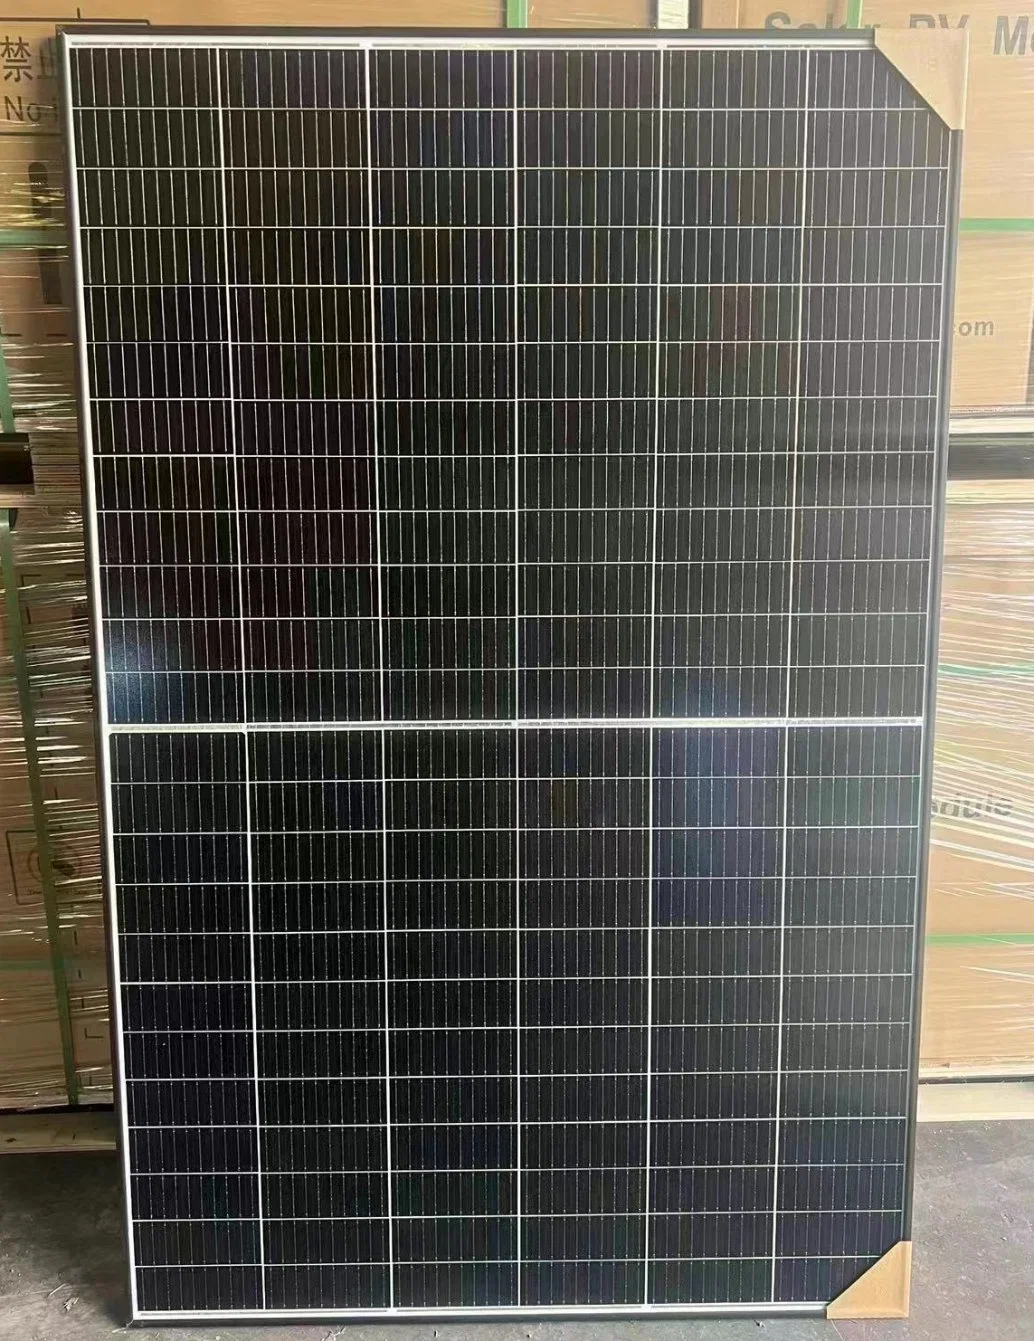 Trina Vertex S Tsm-De09r. 08 Black Frame 420W 430W 435W 440W Solar Panel